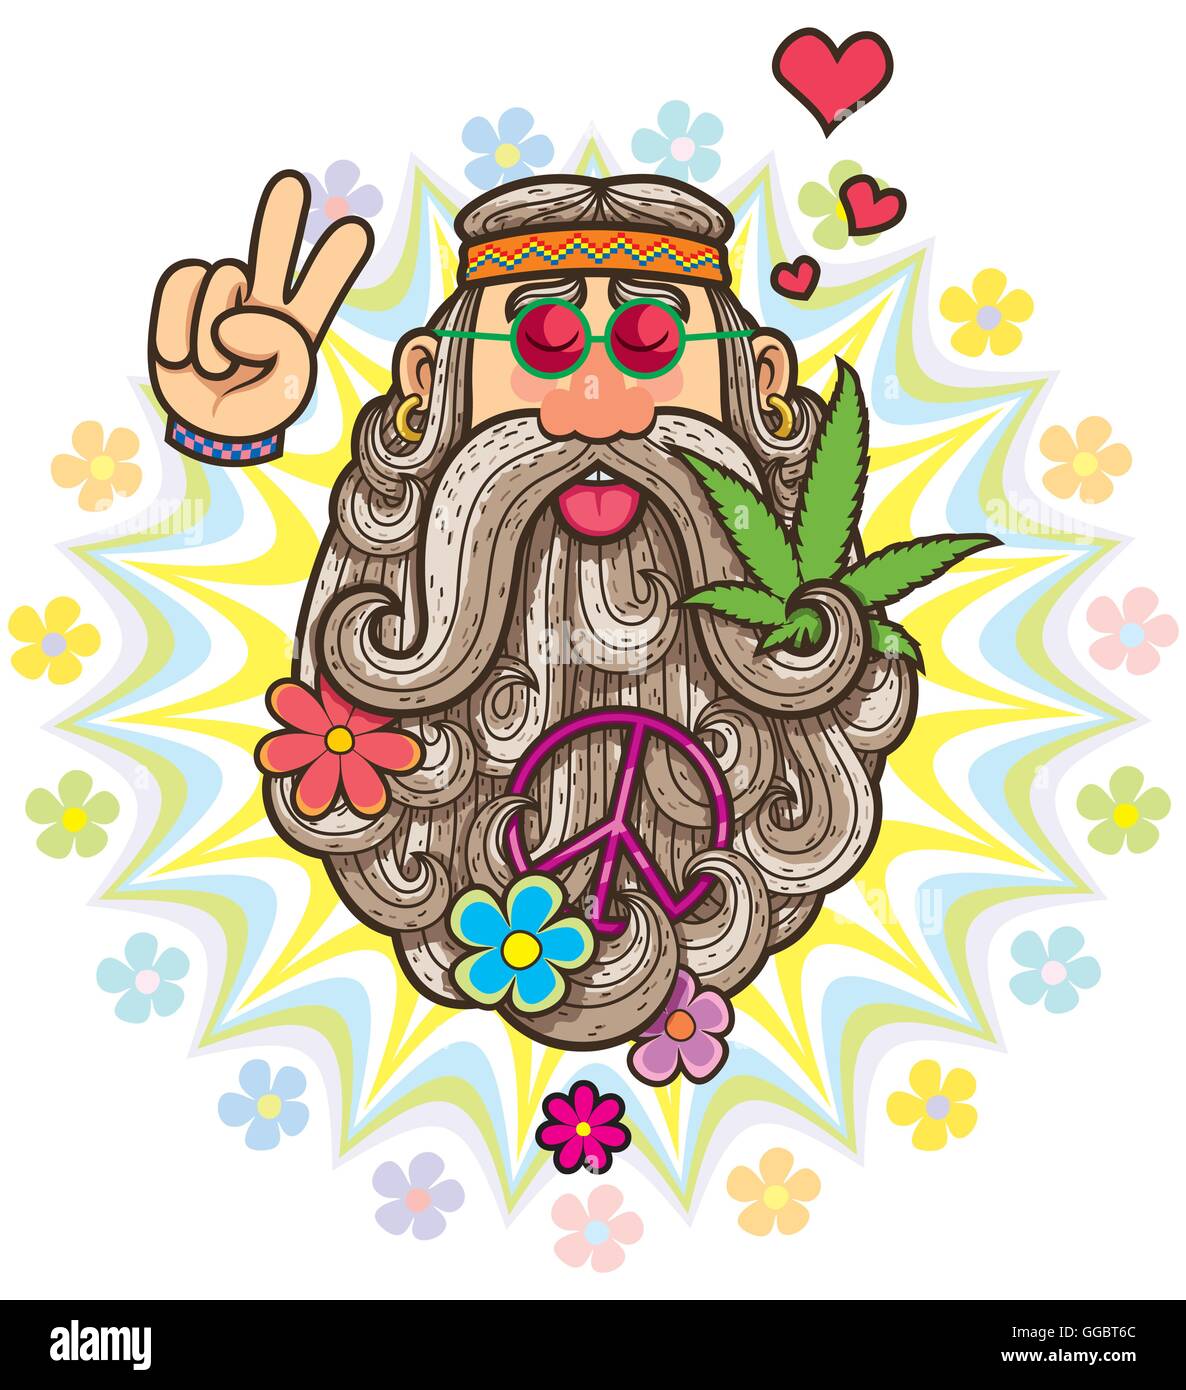 Cartoon illustration of hippie. Stock Vector